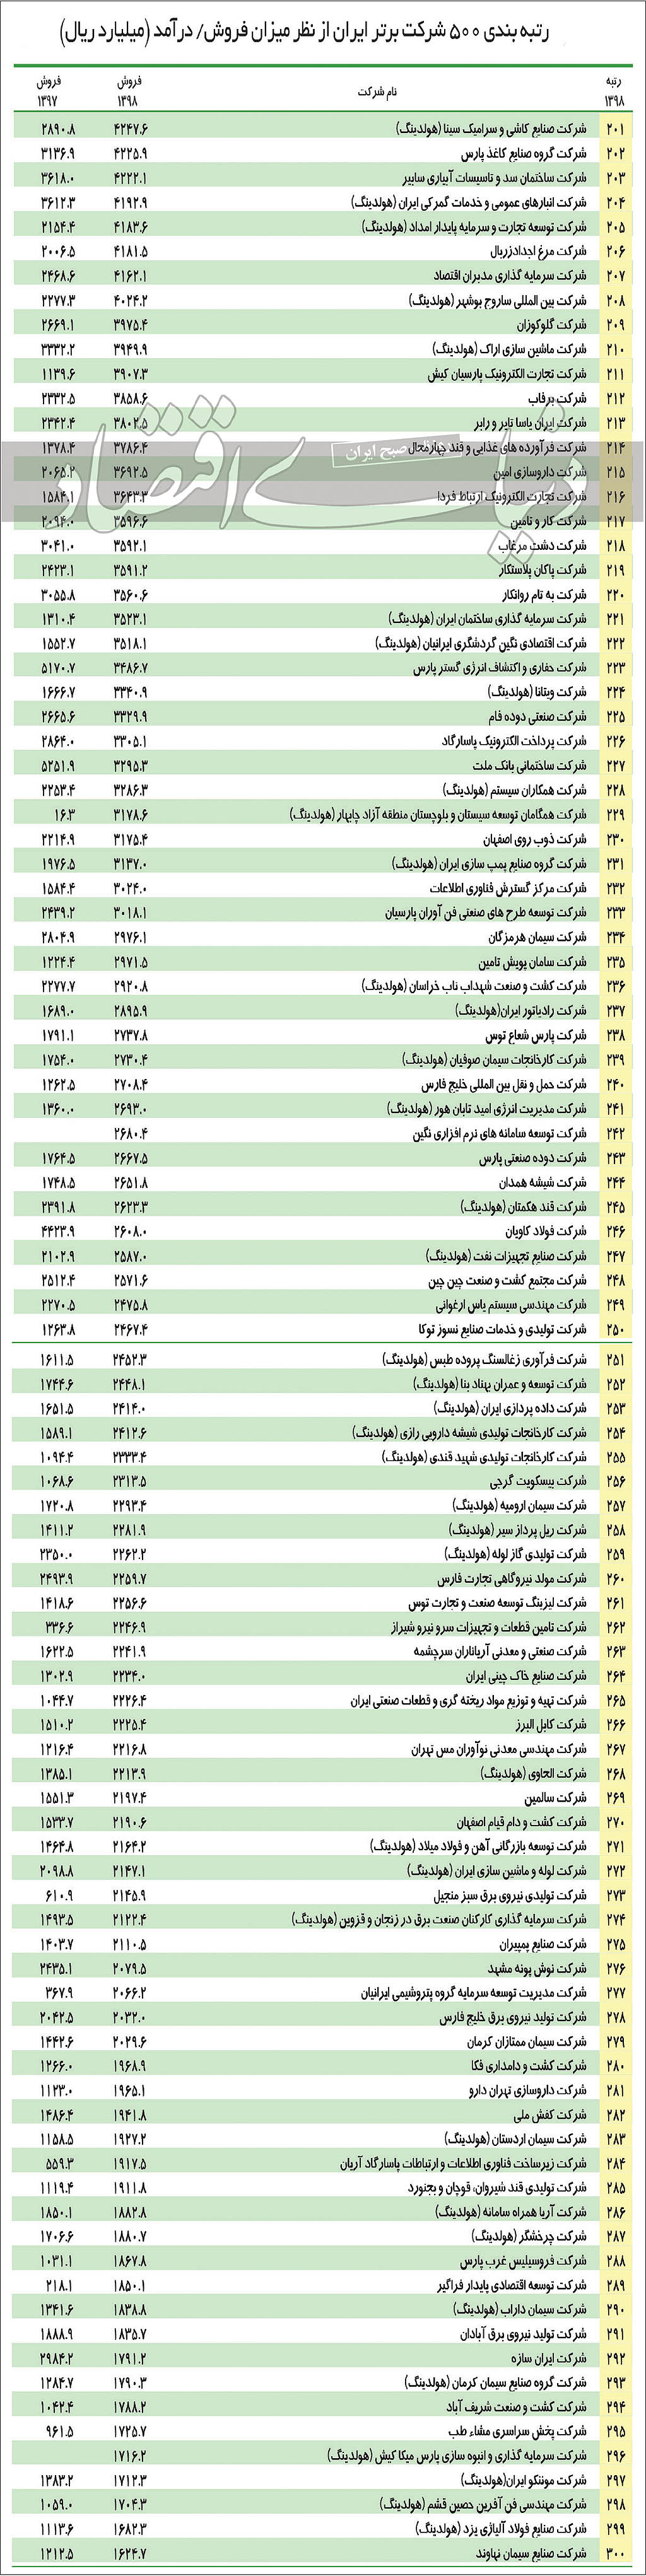 لیست 500 شرکت برتر ایرانی-3